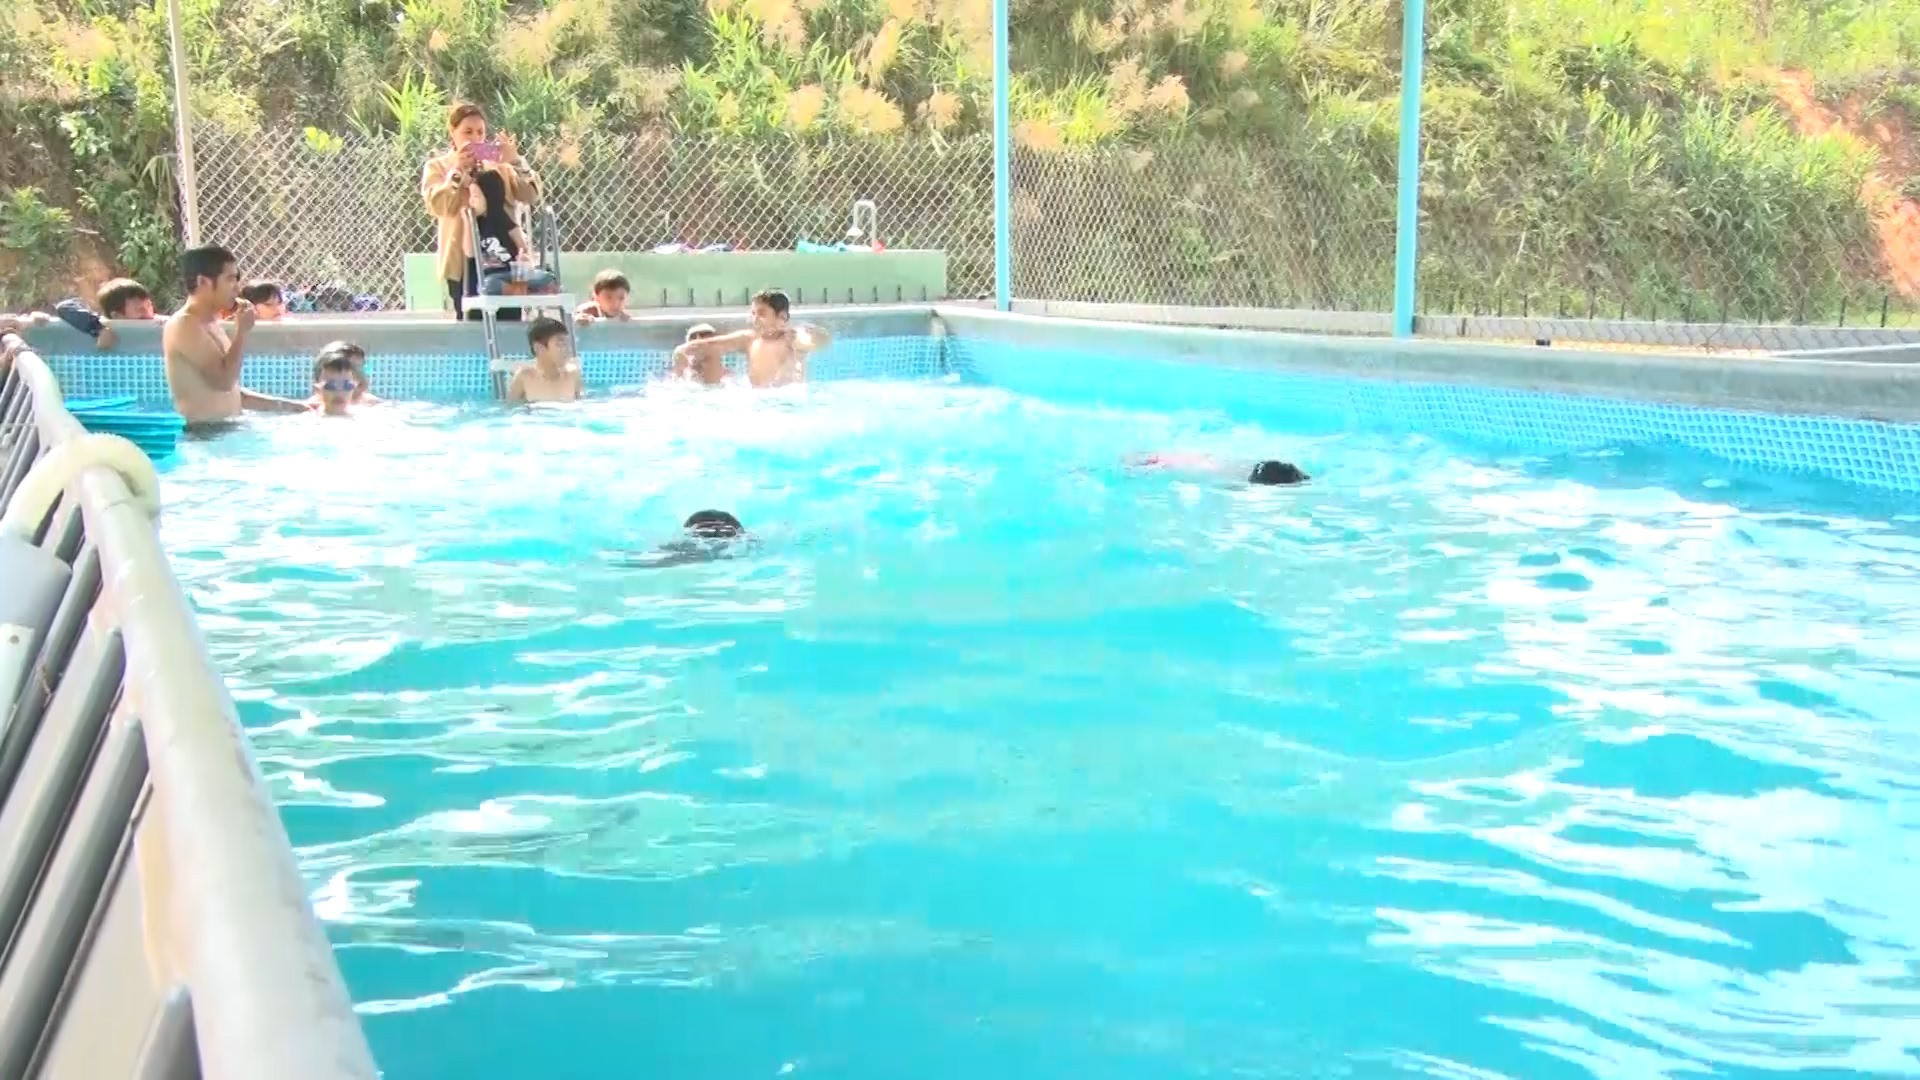 Hồ bơi đặt tại Trường tiểu học Kim Đồng giúp hàng trăm học sinh được học, nâng cao kỹ năng bơi lội. Ảnh: Q.Y